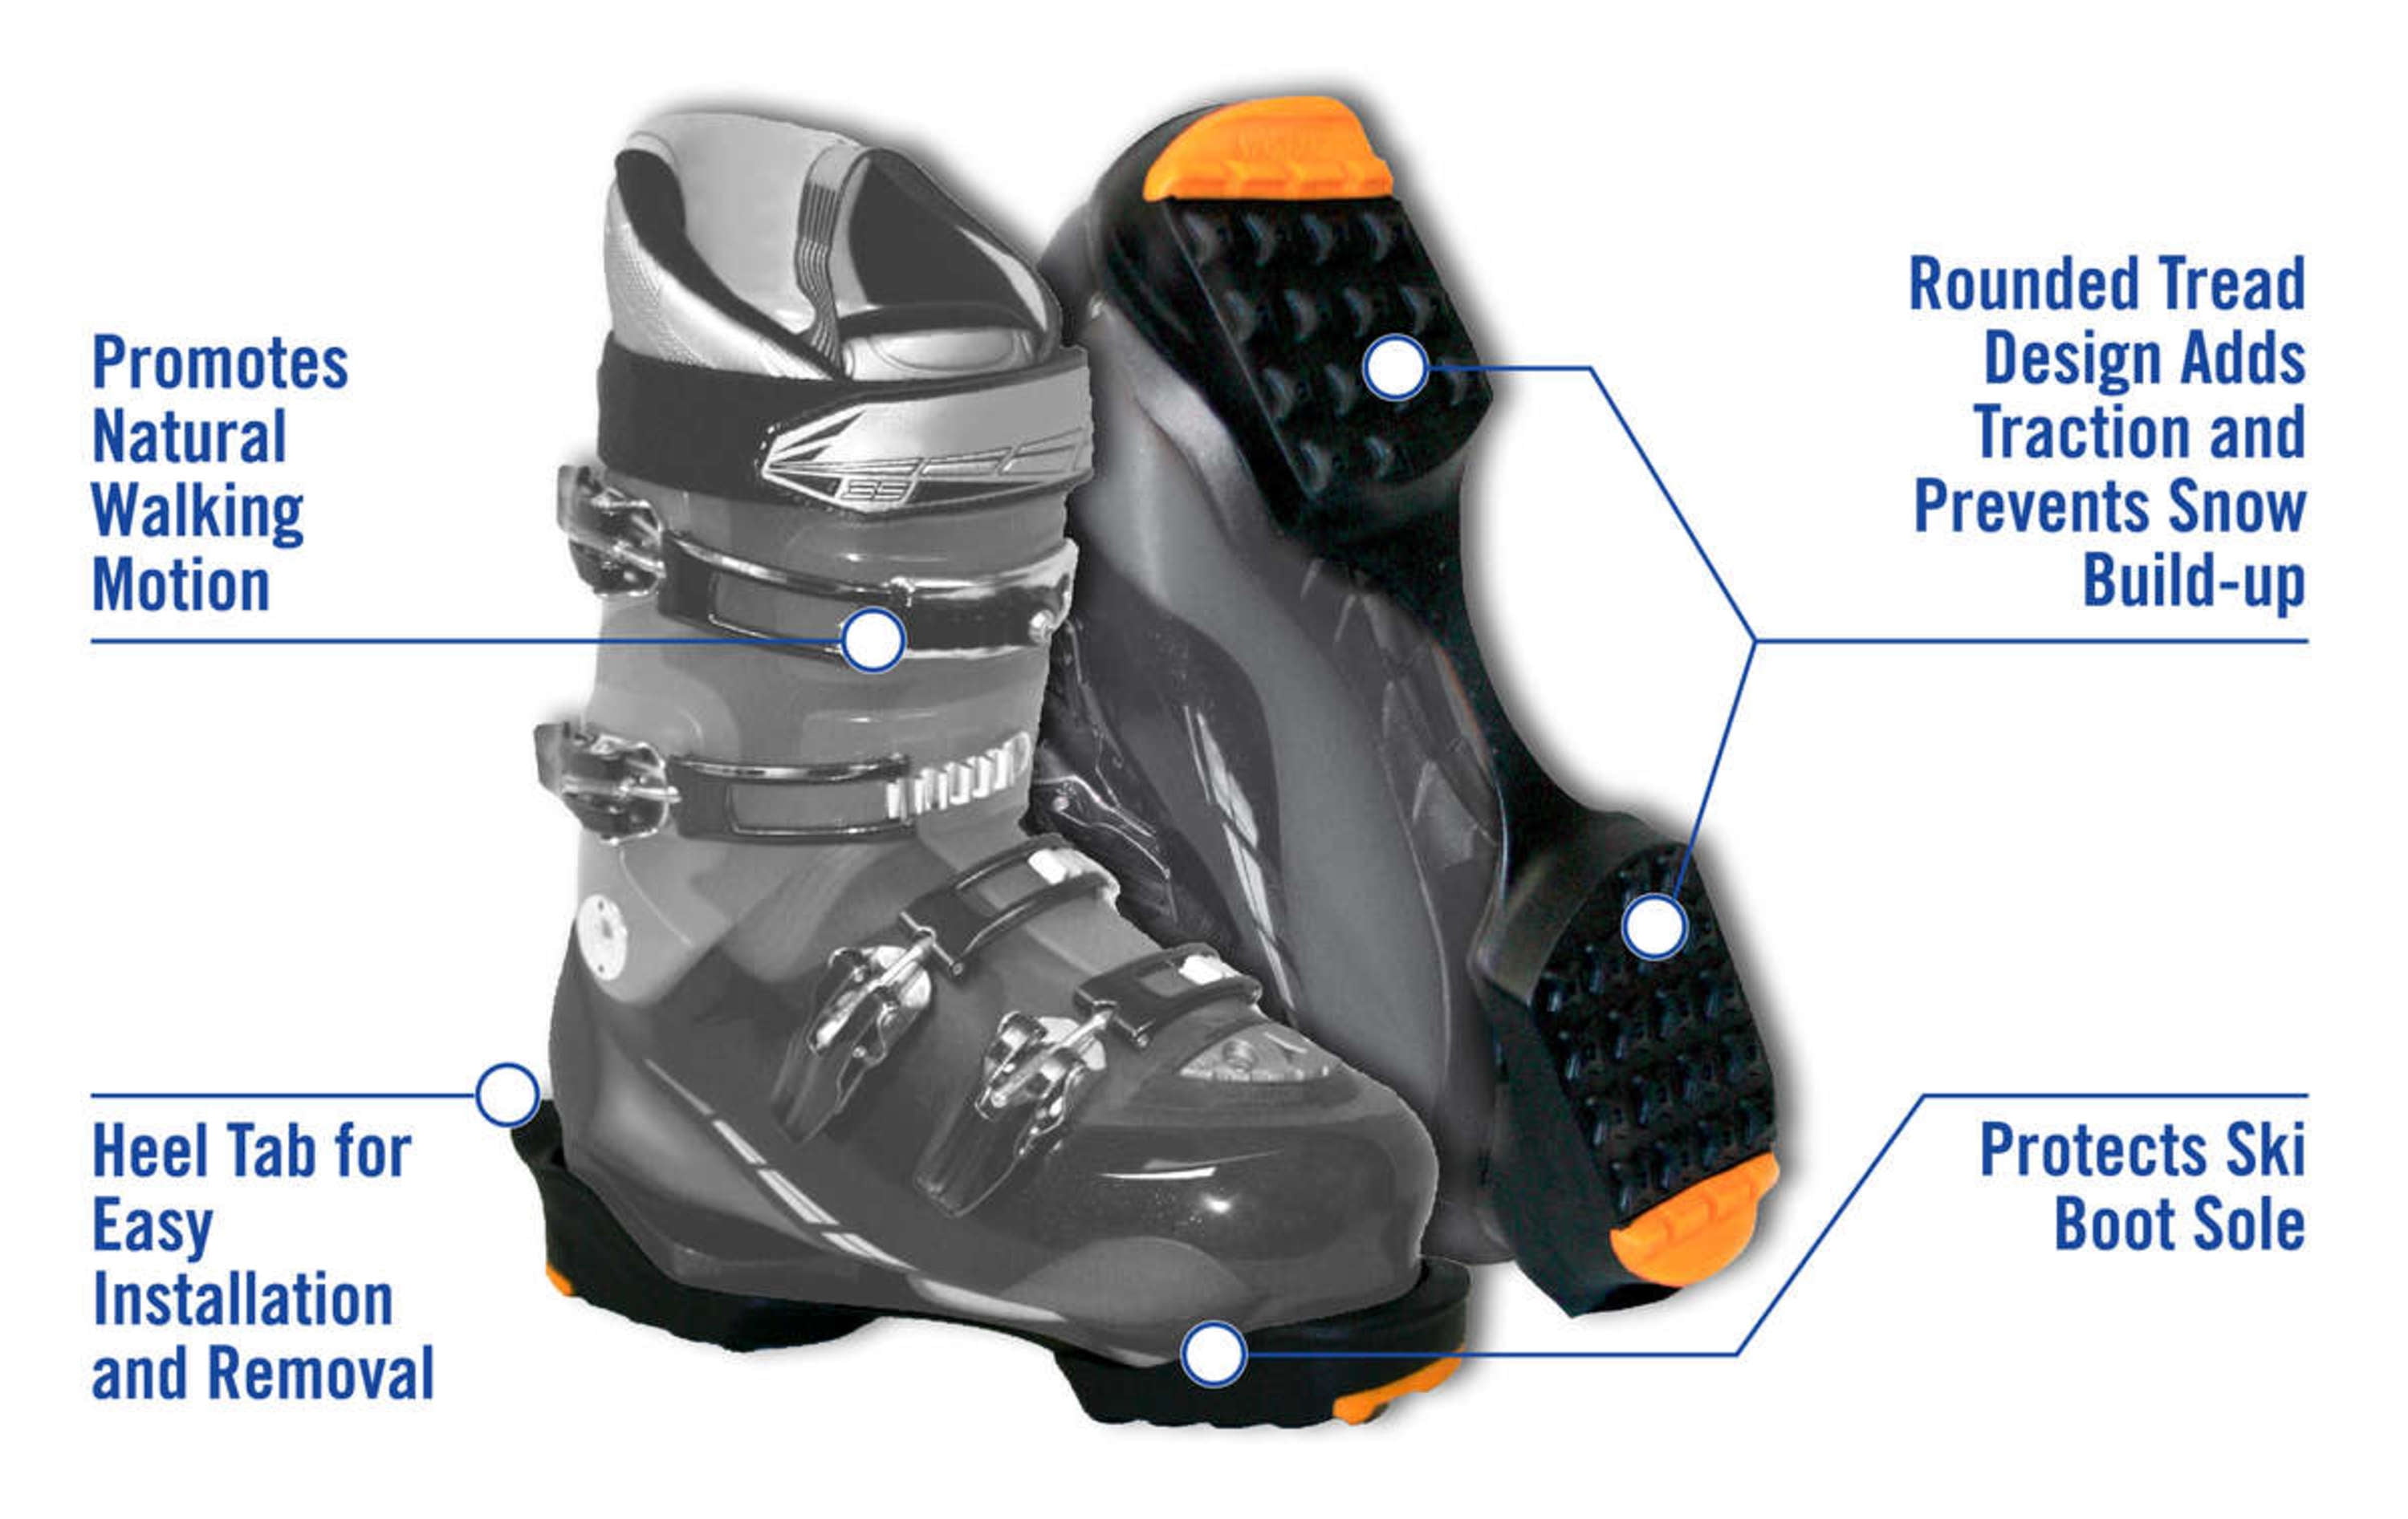 Лыжи подошв. Sidas Ski Boot traction накладки. Протекторы для горнолыжных ботинок SKITRAX. Защита для подошвы горнолыжных ботинок Ski Boot traction. Комплект подошв для горнолыжных ботинок head Hammer.